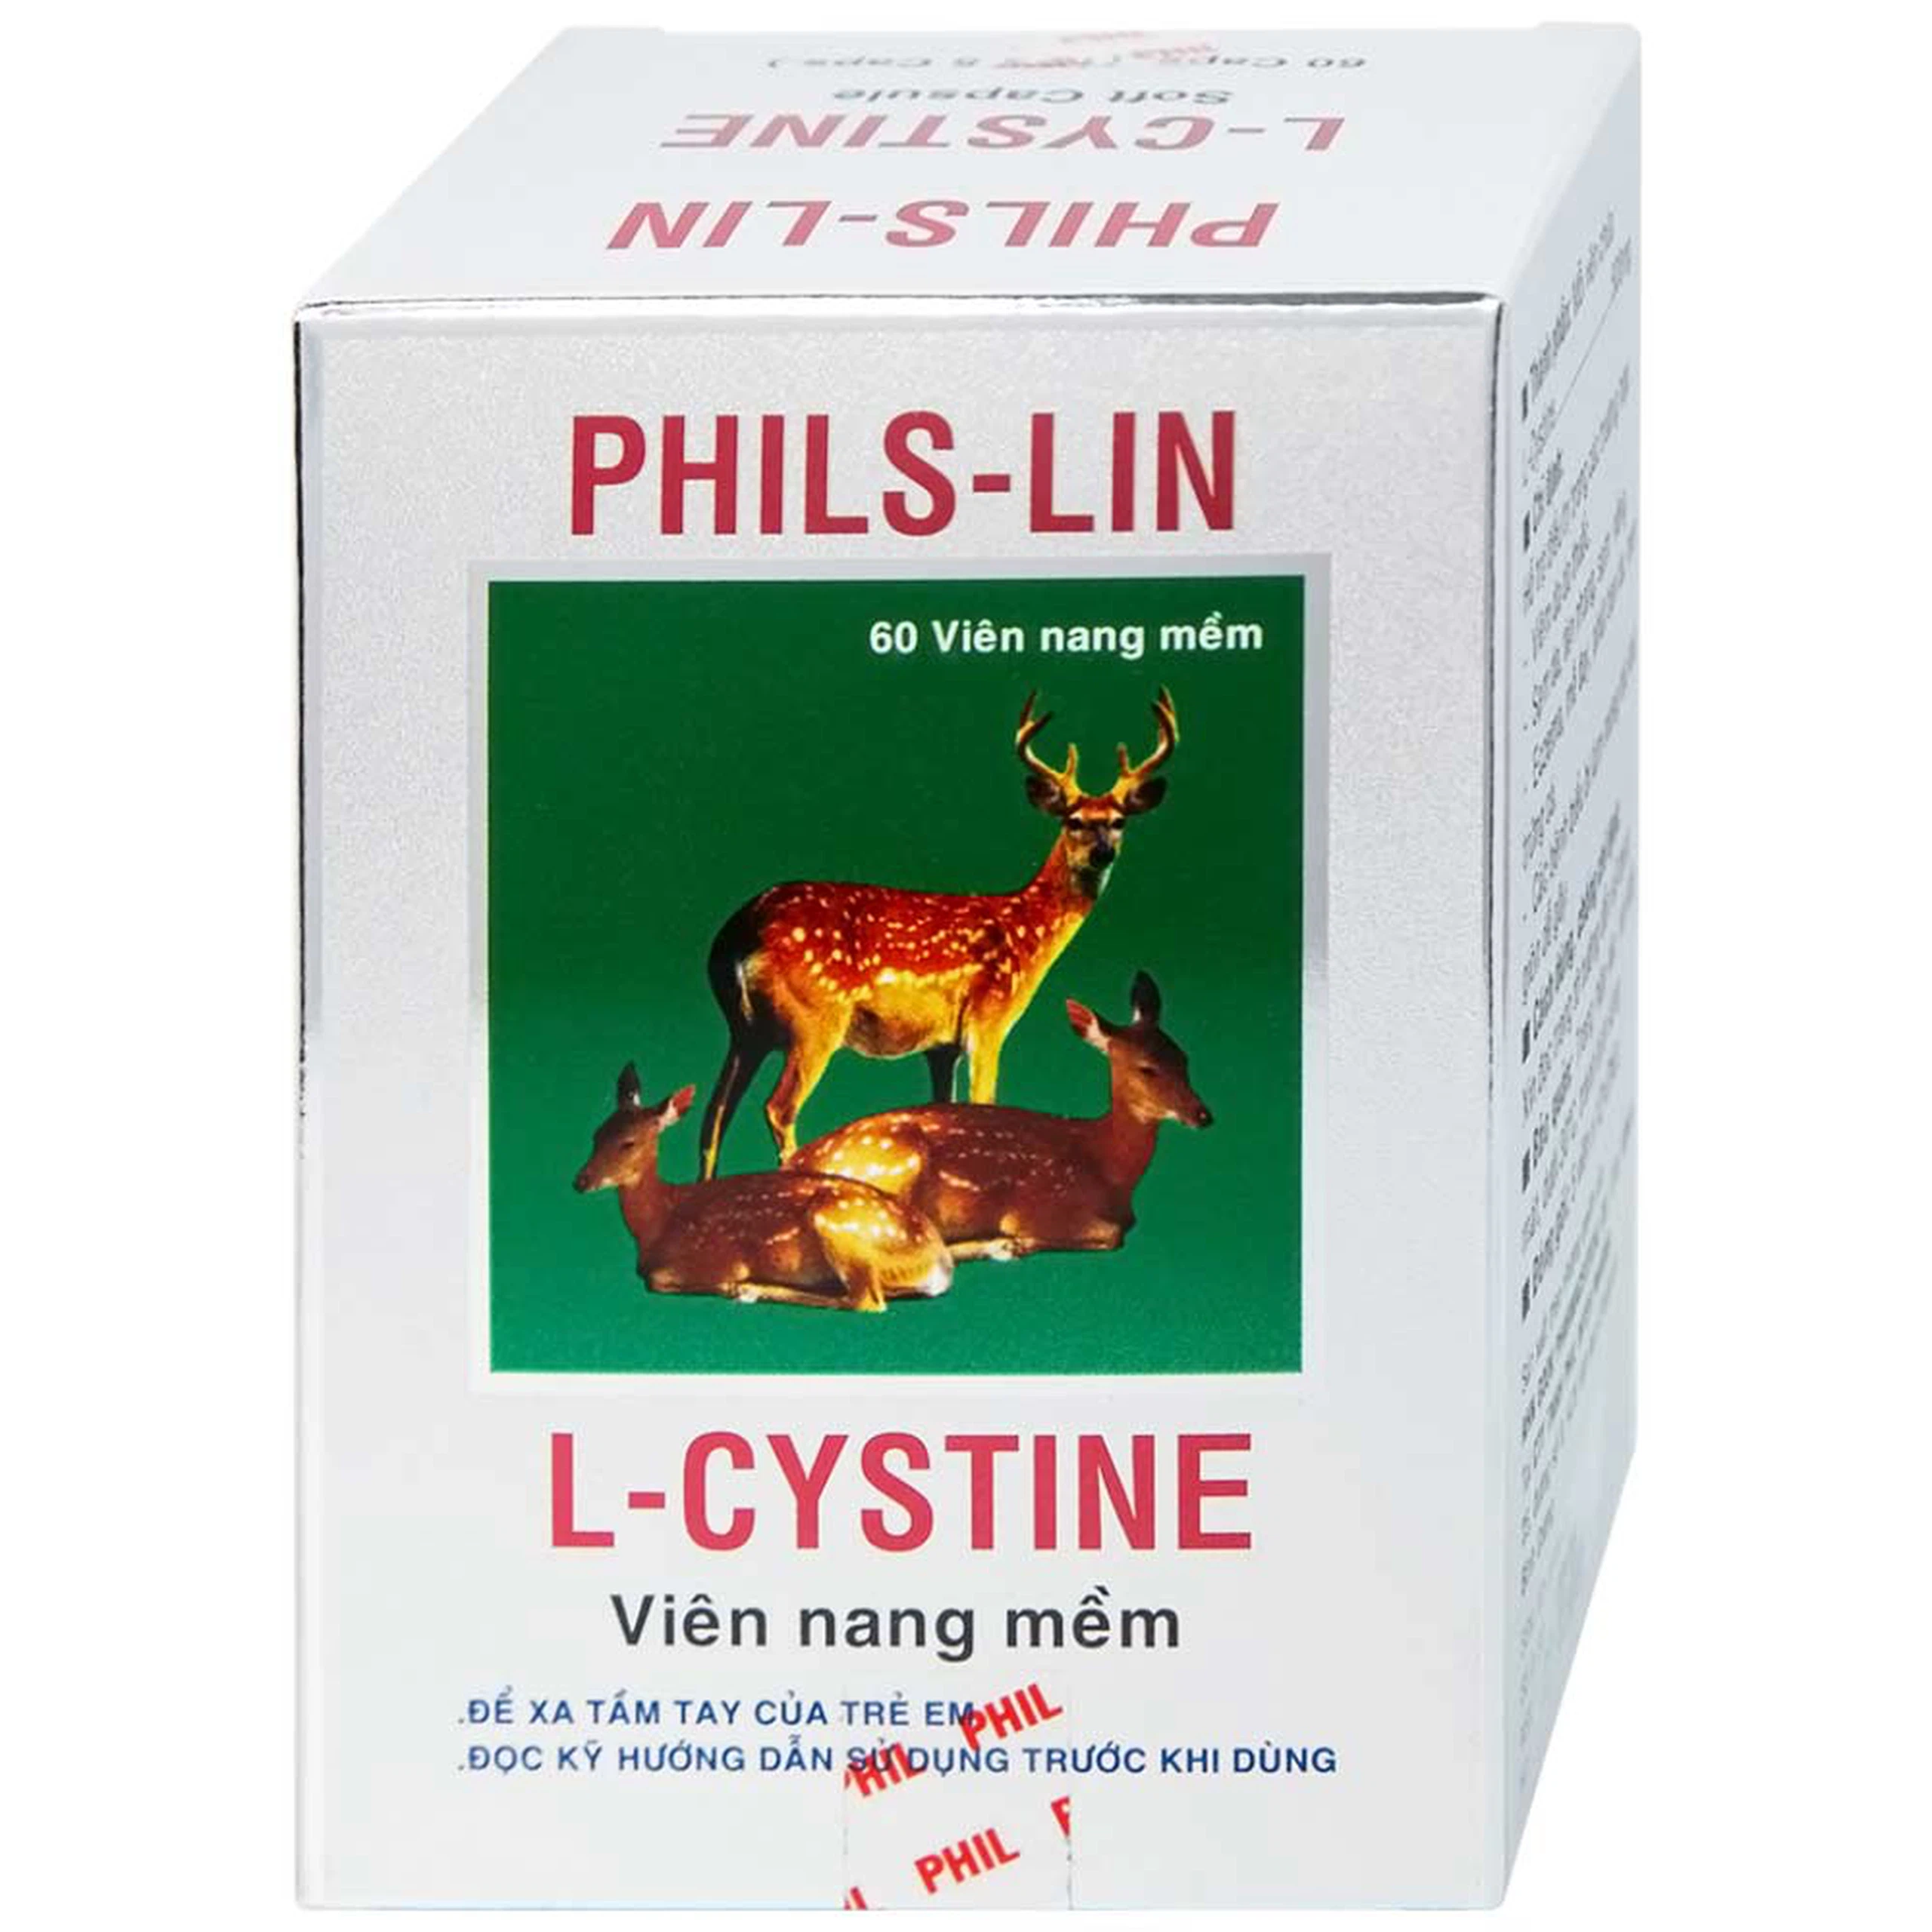 Viên nang mềm L-Cystine 500mg Phils Lin hỗ trợ điều trị viêm da do thuốc, sạm da, tàn nhang (12 vỉ x 5 viên)